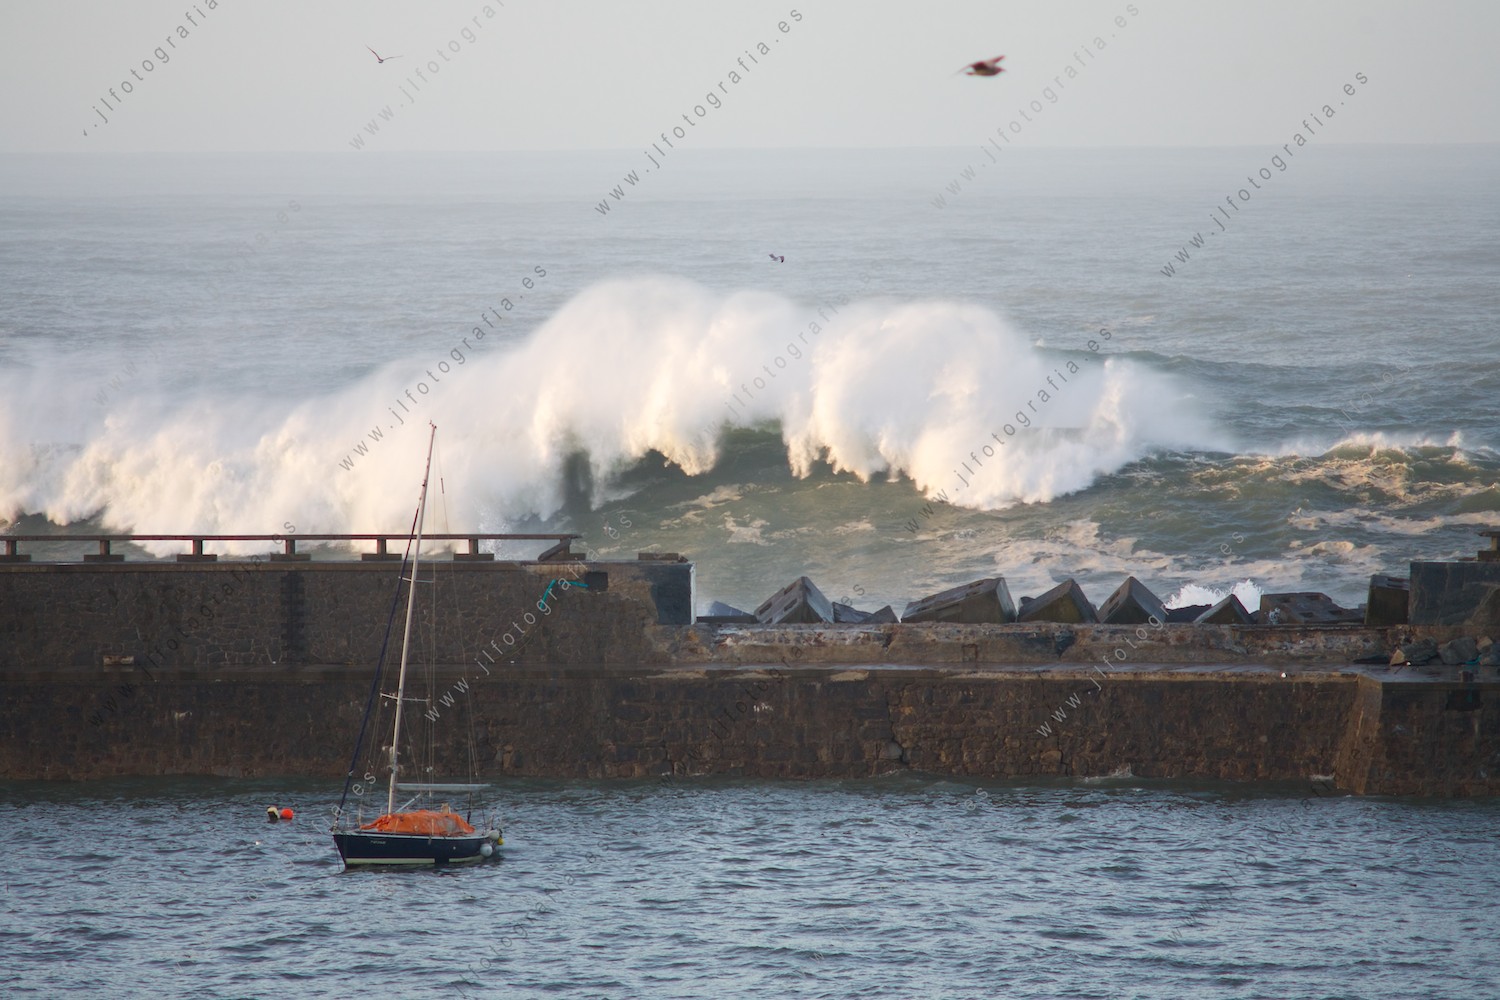 Imagen aterradora del dique del puerto reventado por el oleaje con olas que siguen golpeando